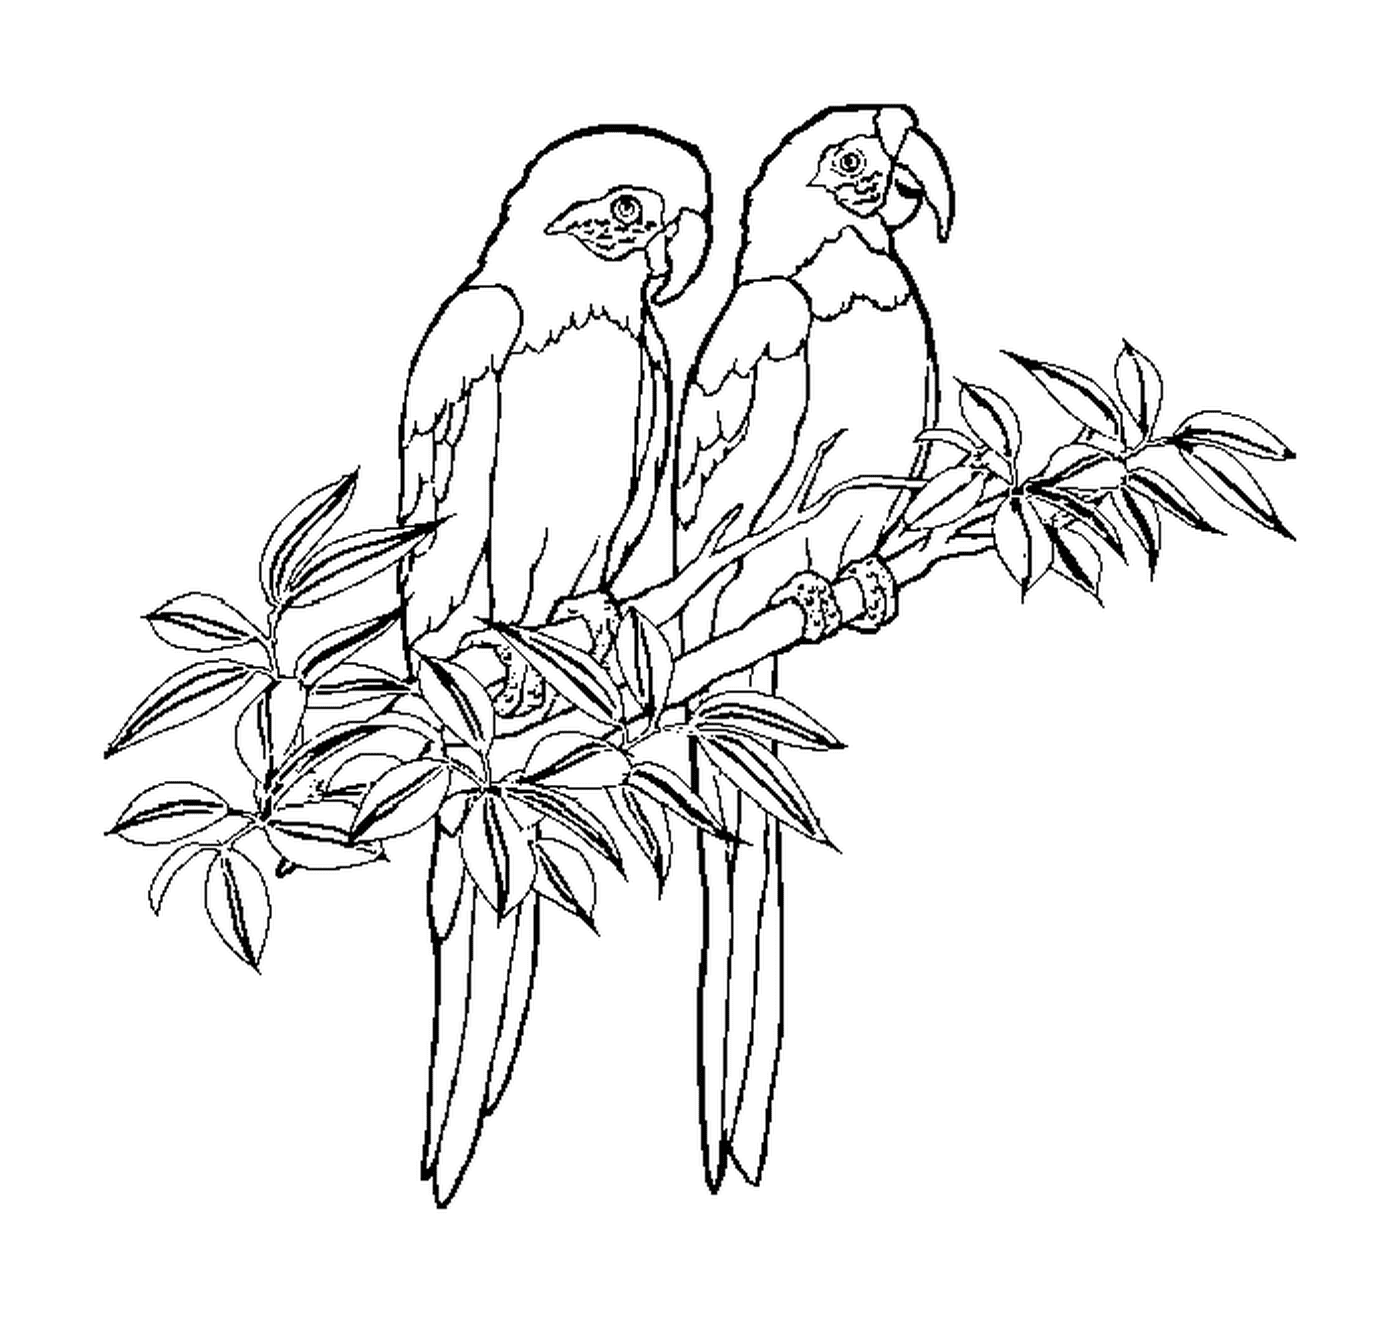  Zwei Papageien sitzen zusammen 